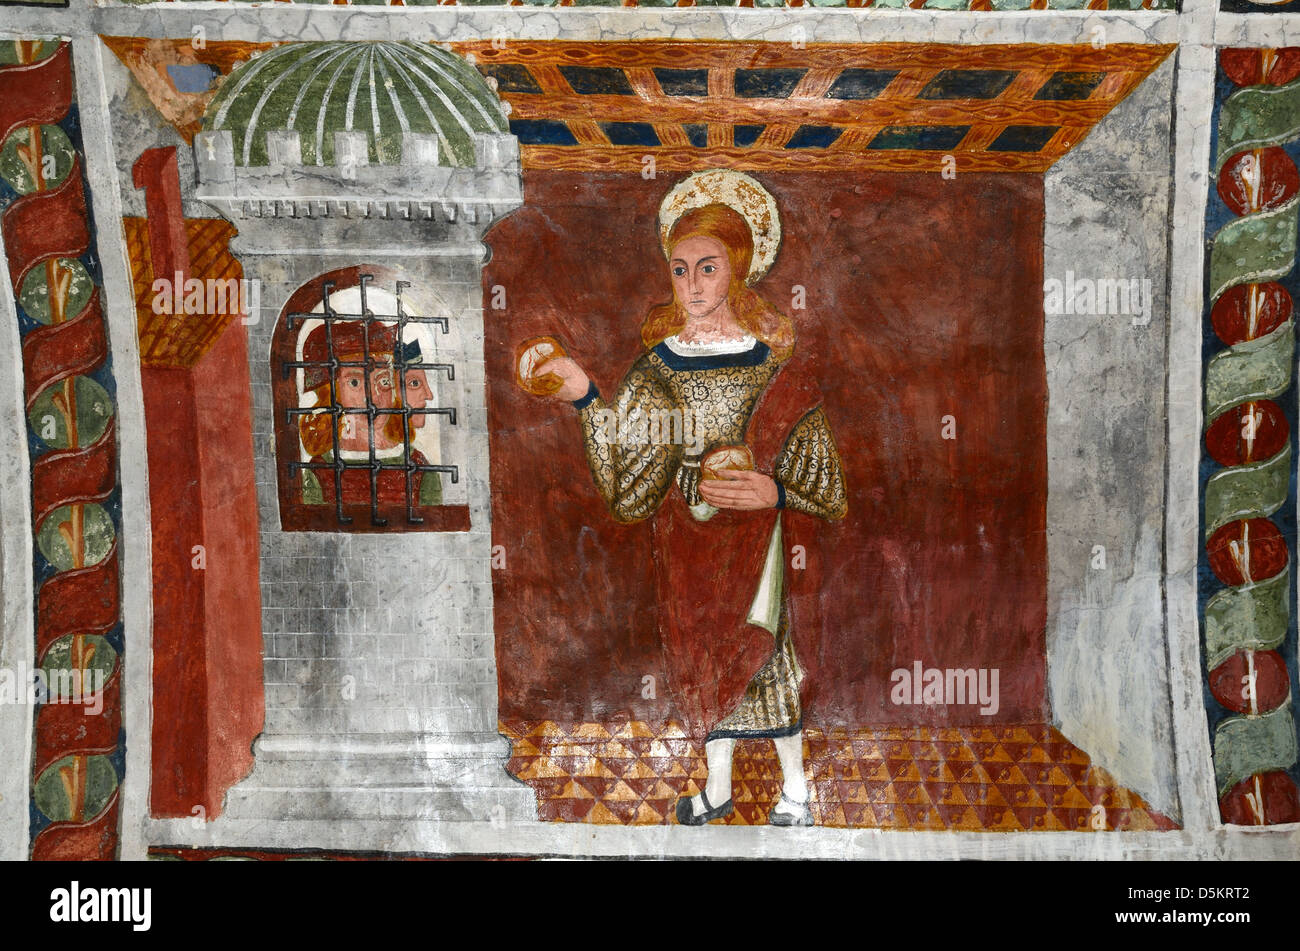 Wandgemälde oder Fresko der heilige Sebastian, der den inhaftierten Christen Brot bringt (1513), malte Kapelle des heiligen Sebastian Roubion Alpes-Maritimes Frankreich Stockfoto